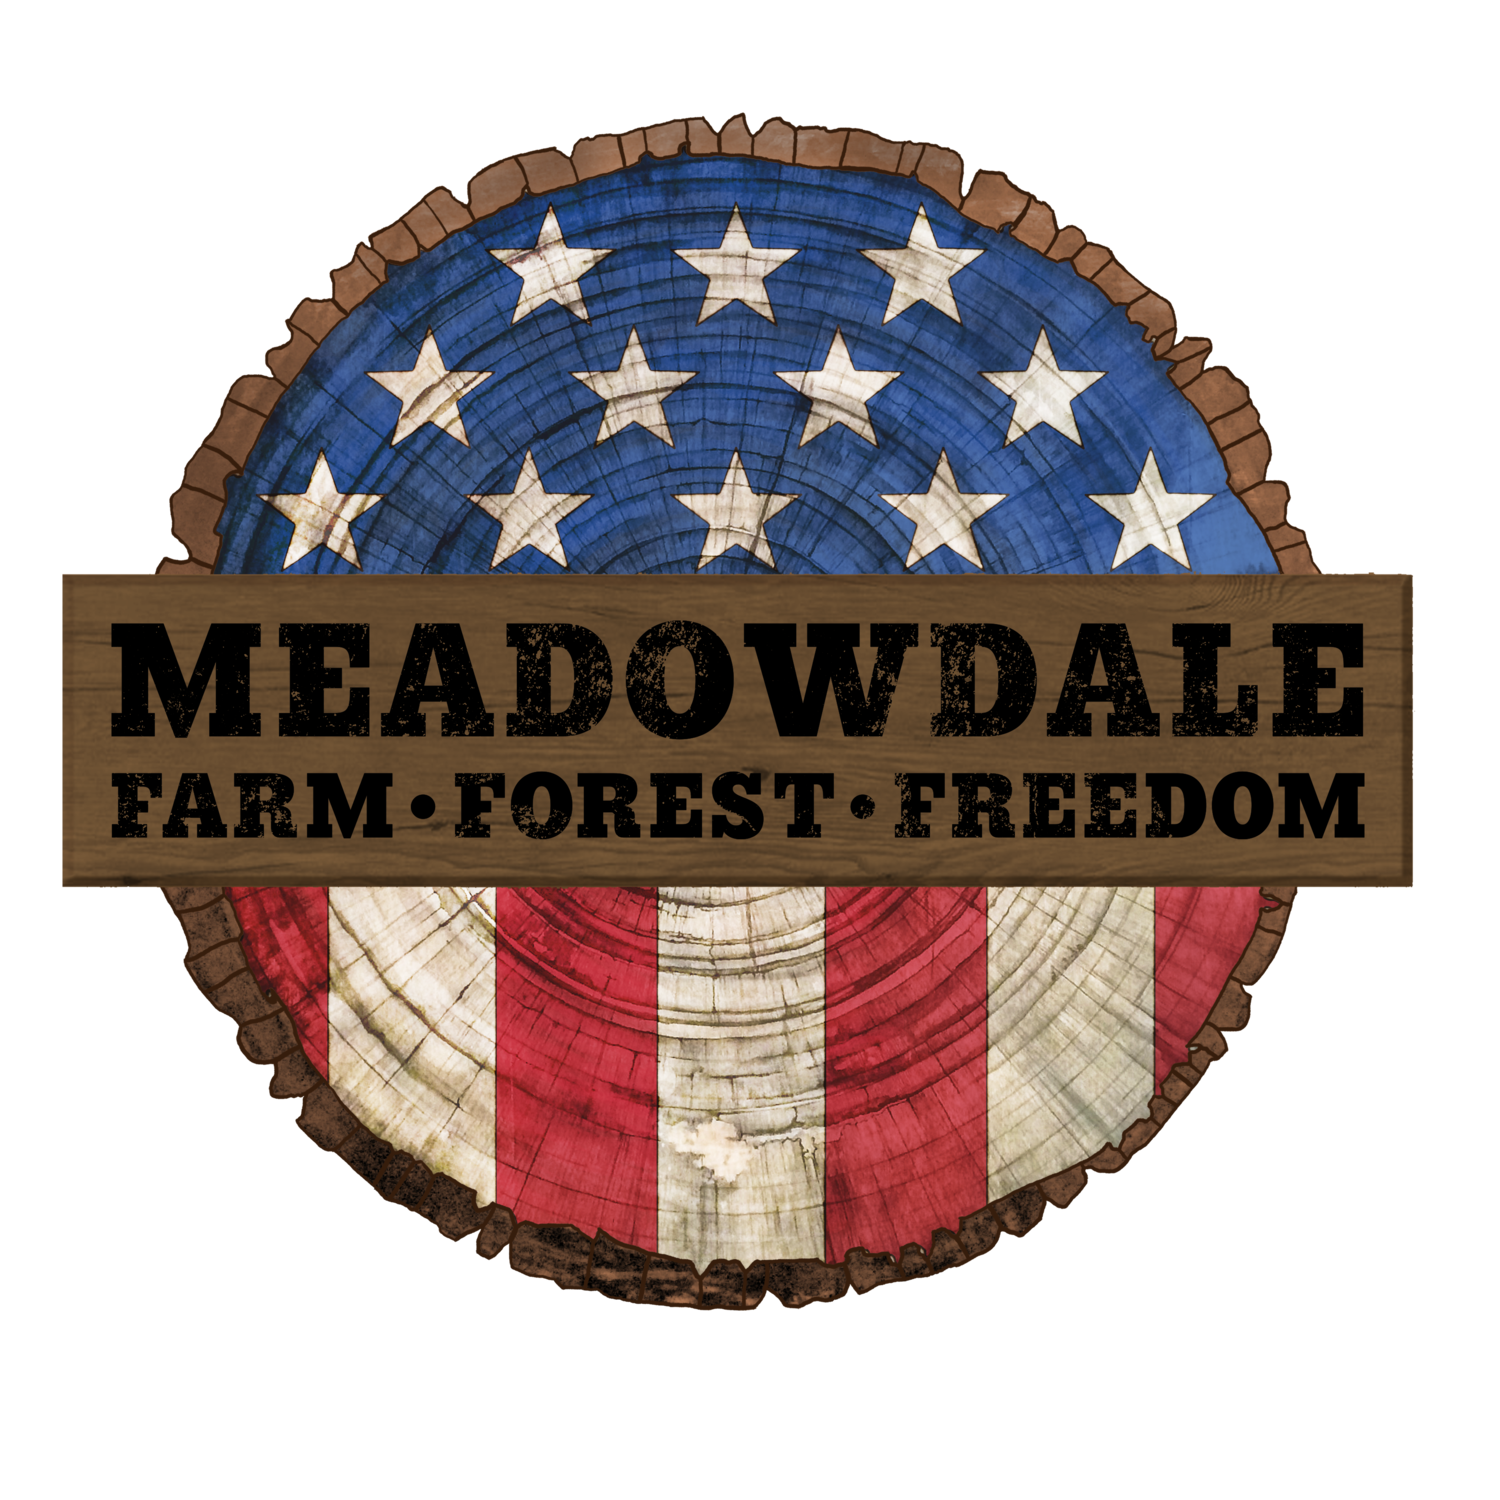 Meadowdale Farm